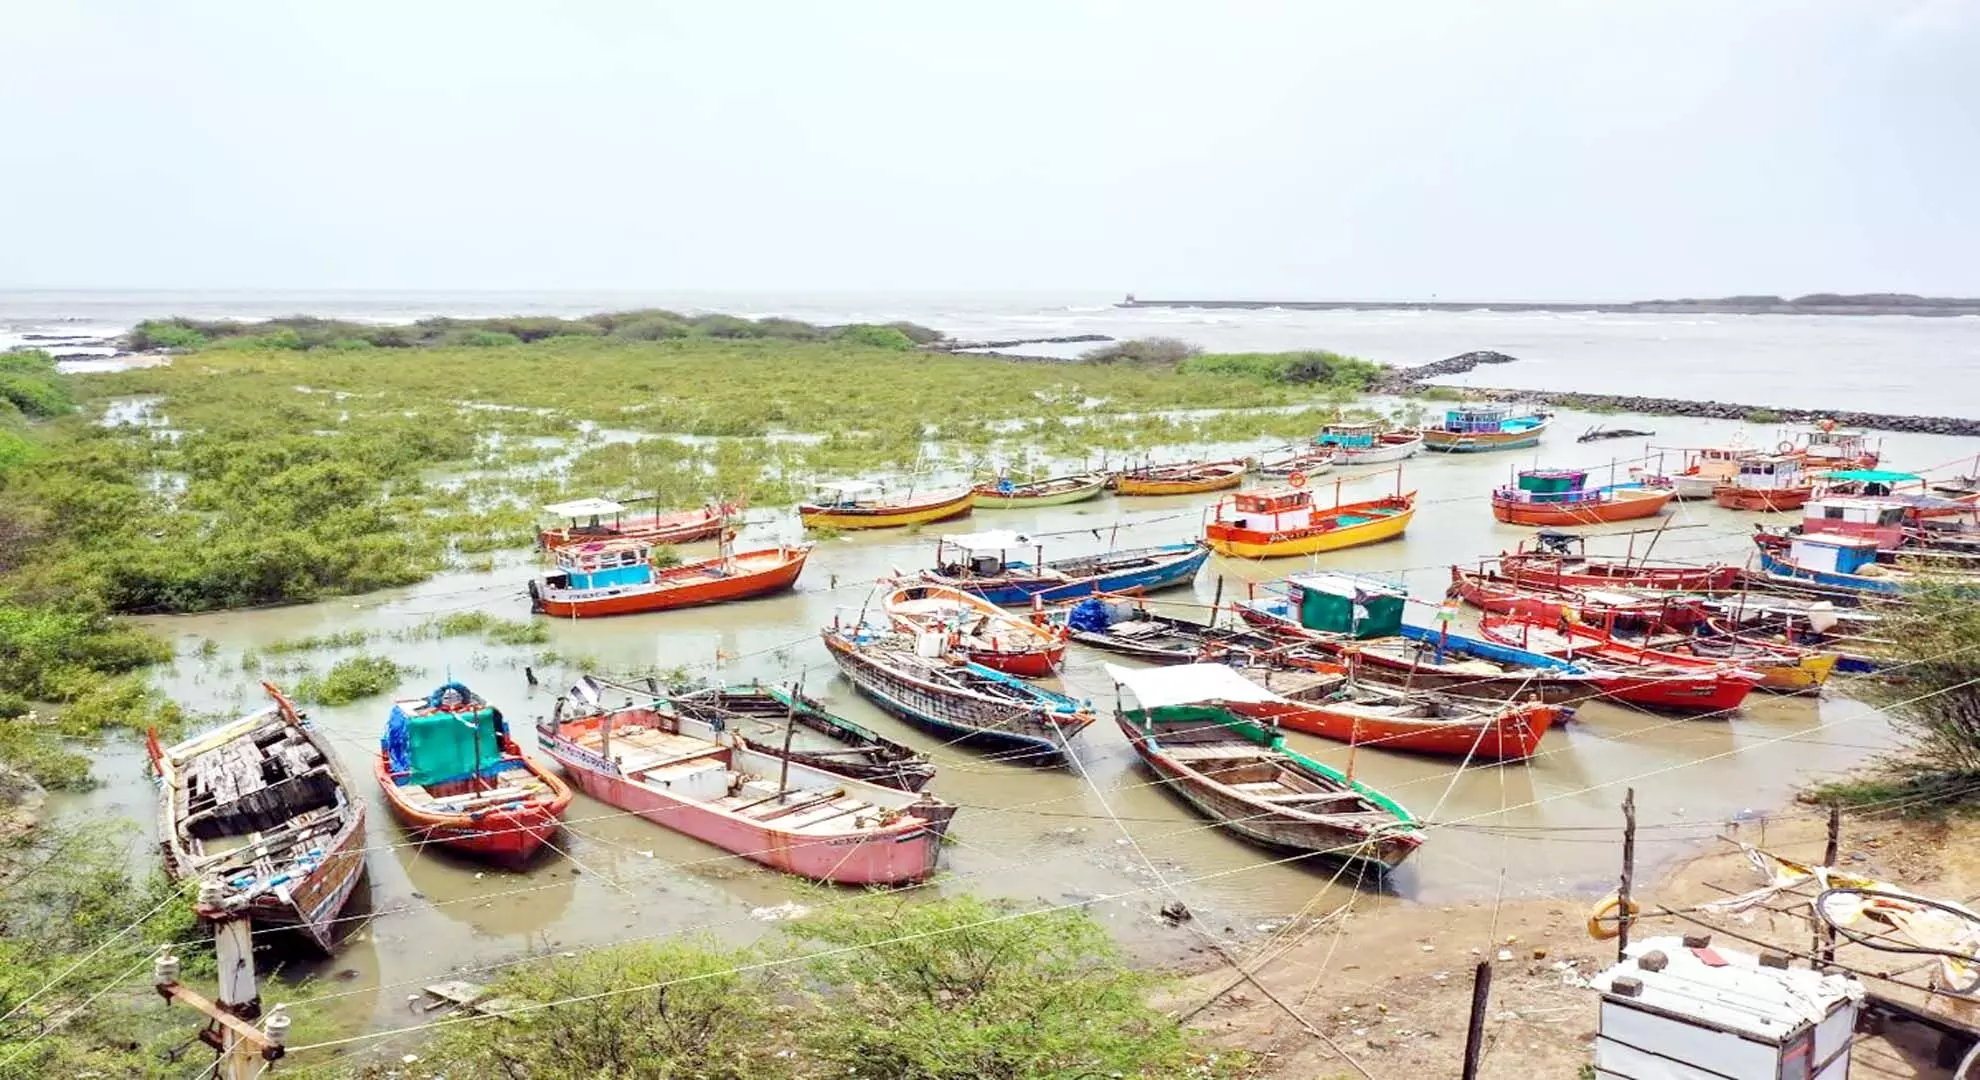 आंध्र प्रदेश में 15 अप्रैल से 14 जून तक समुद्री मछली पकड़ने पर प्रतिबंध